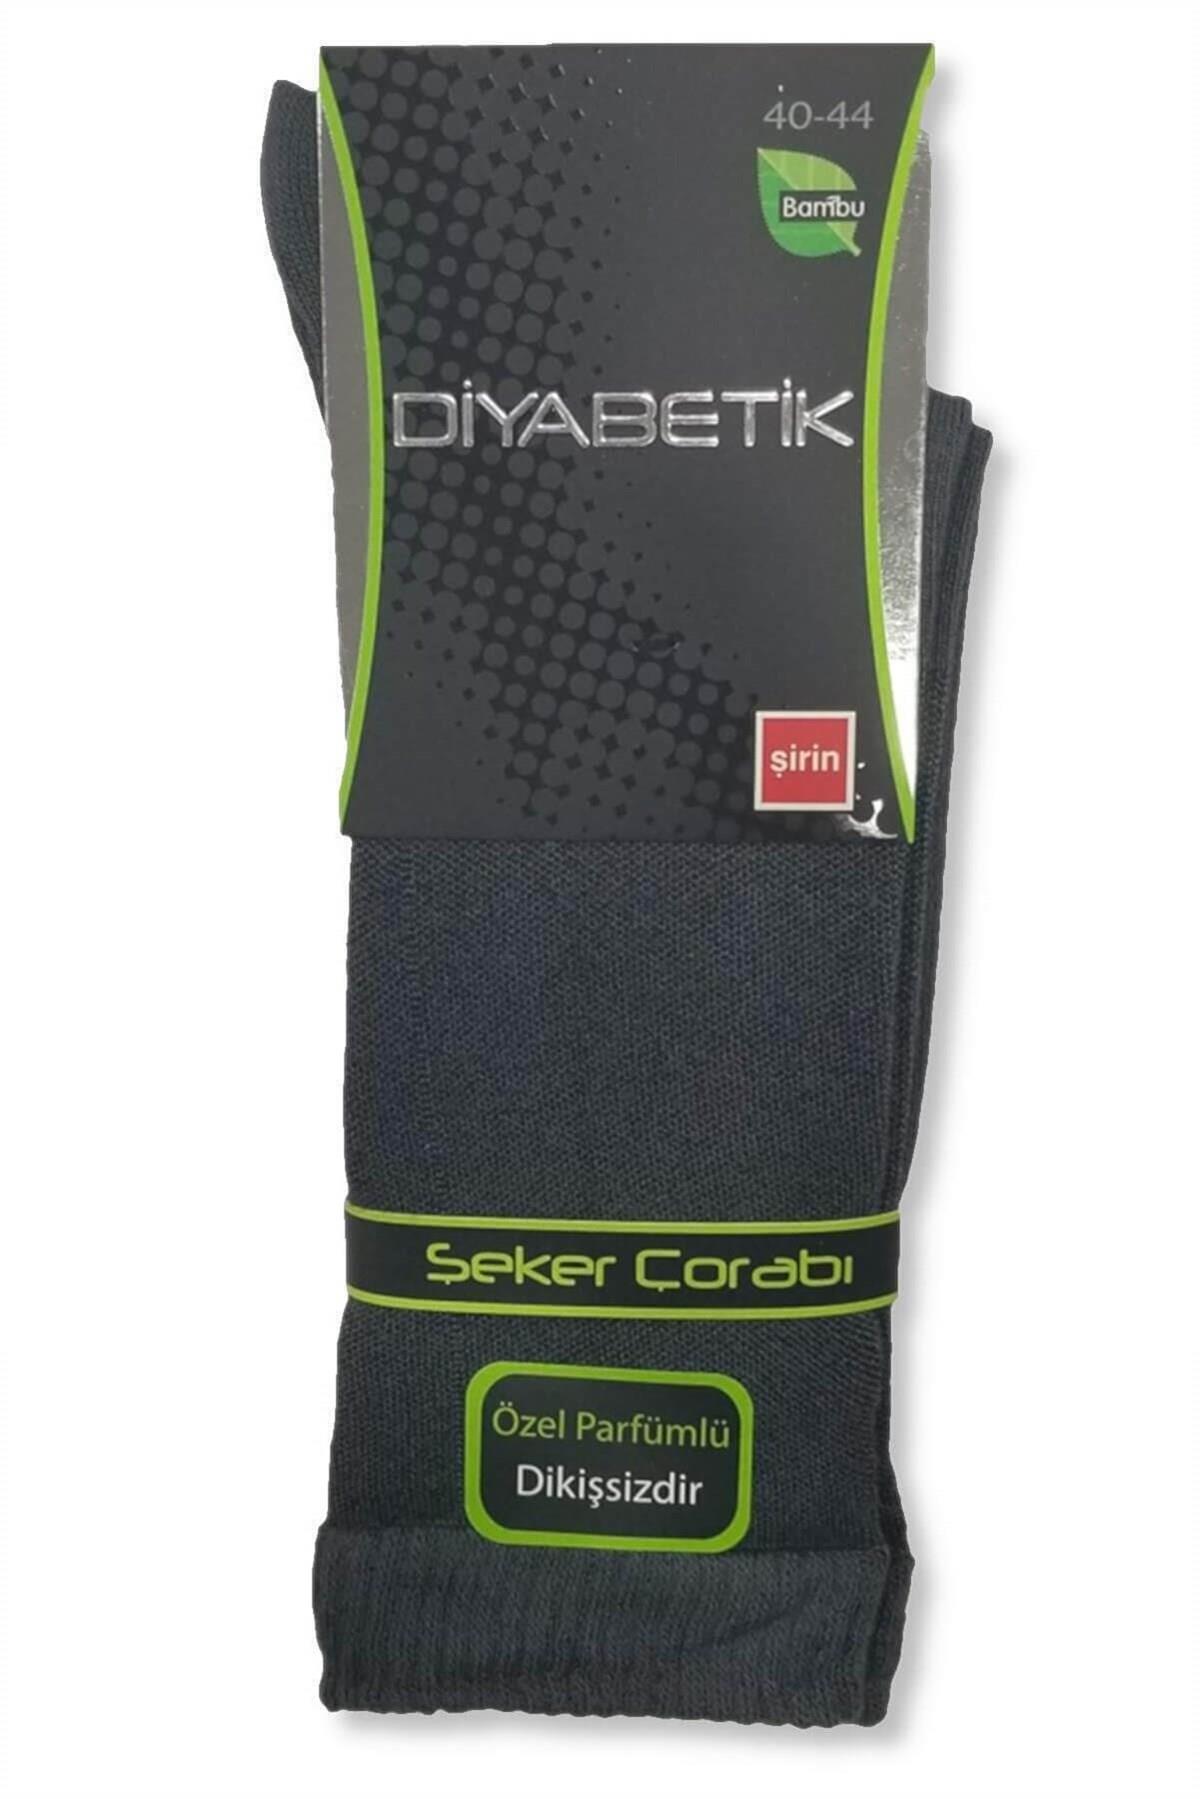 Şirin 3'lü Paket Bambu Diyabetik Lastiksiz Erkek Şeker Çorap |  Çamaşırcımshop